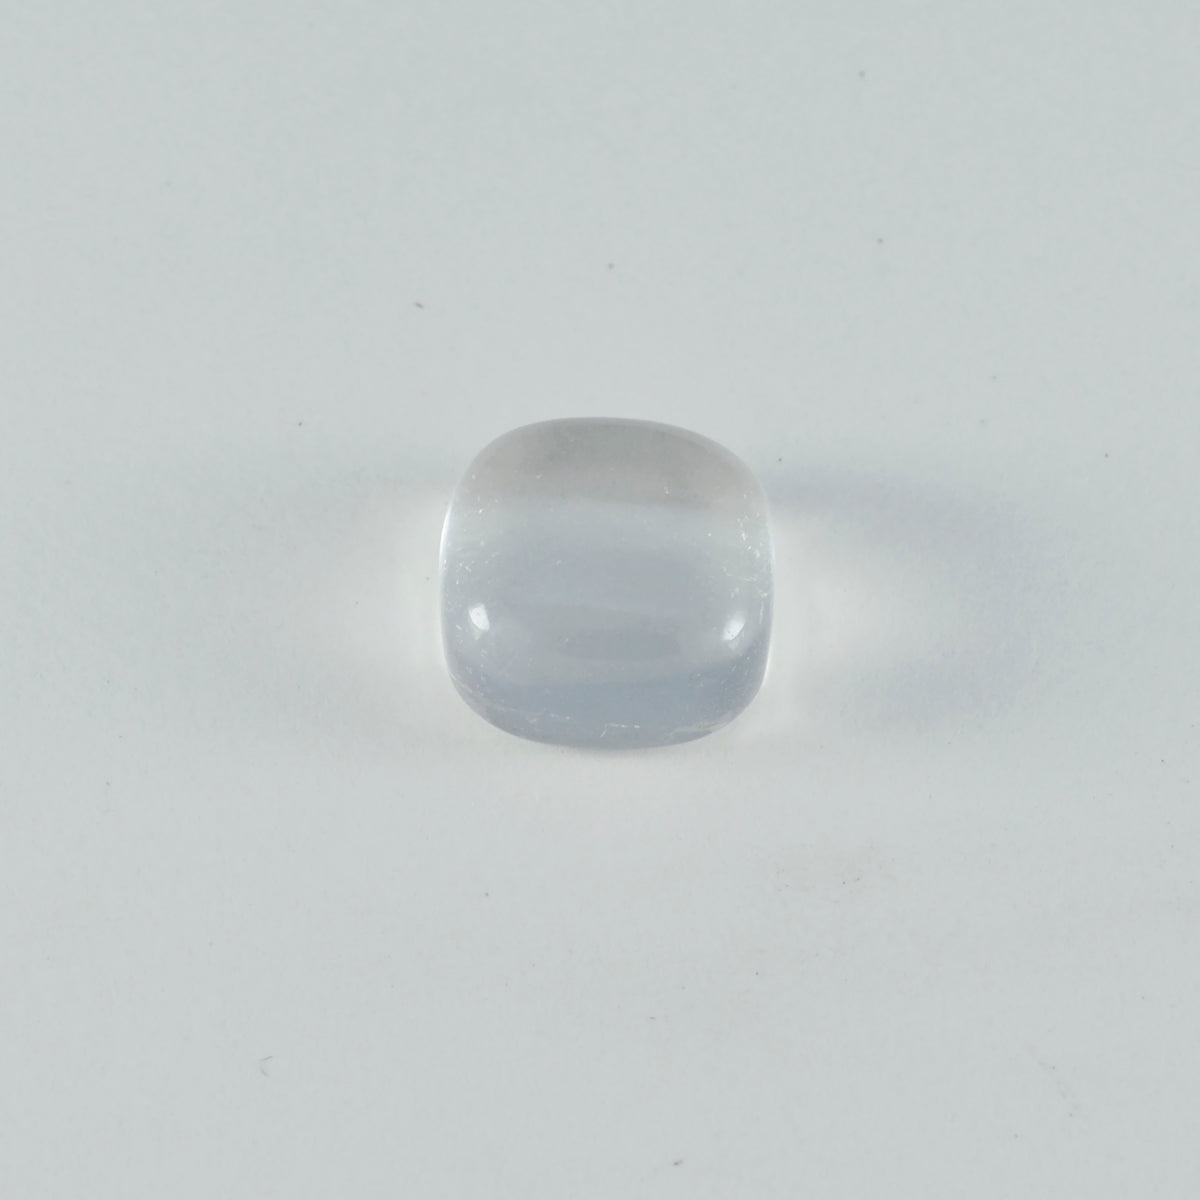 Riyogems – cabochon de quartz en cristal blanc, 10x10mm, en forme de coussin, belle qualité, pierre précieuse en vrac, 1 pièce